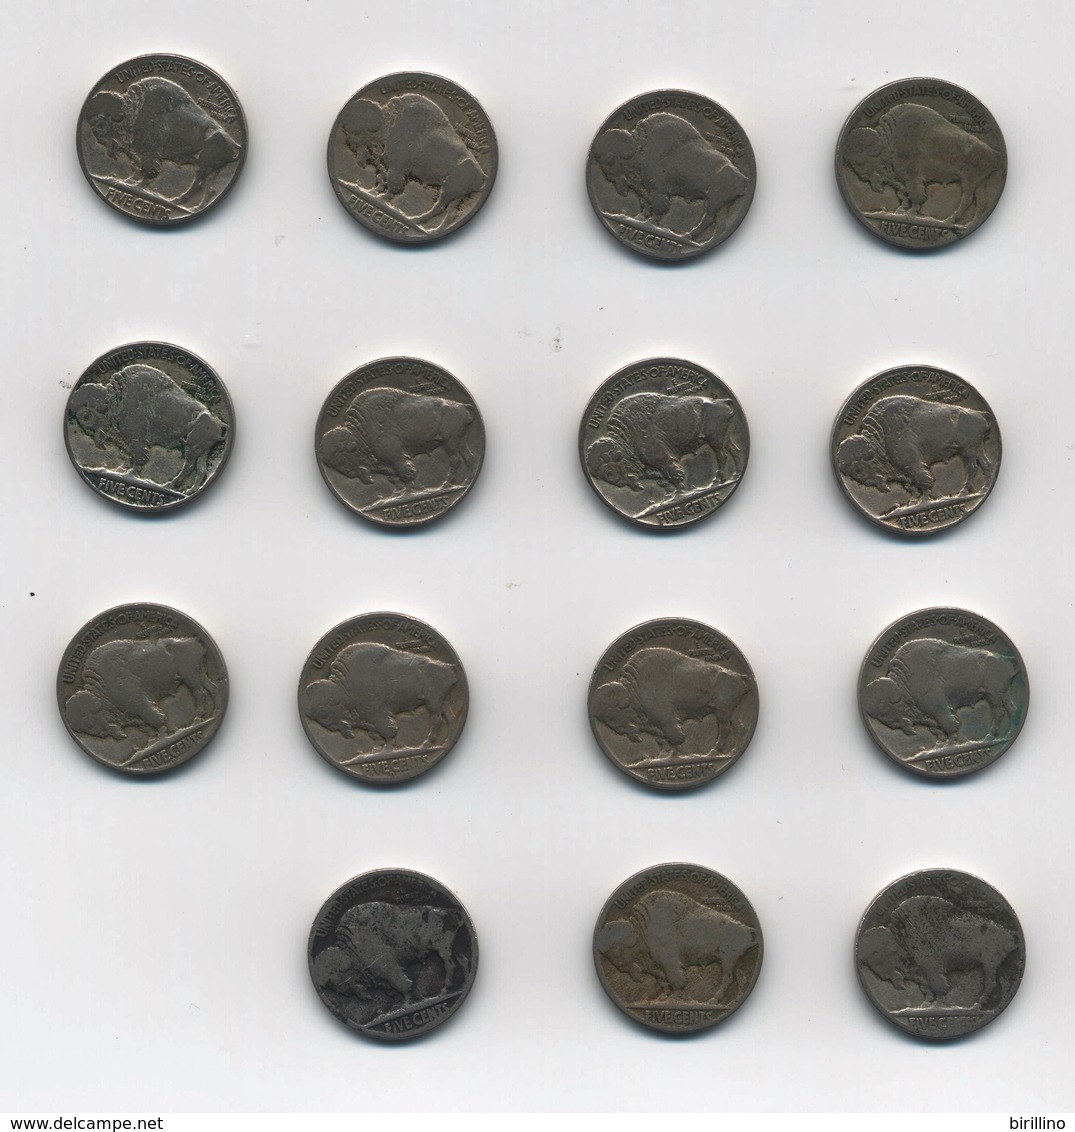 3104 - Lotto Di 15 Monete 5 Cent Buffalo. - Central America